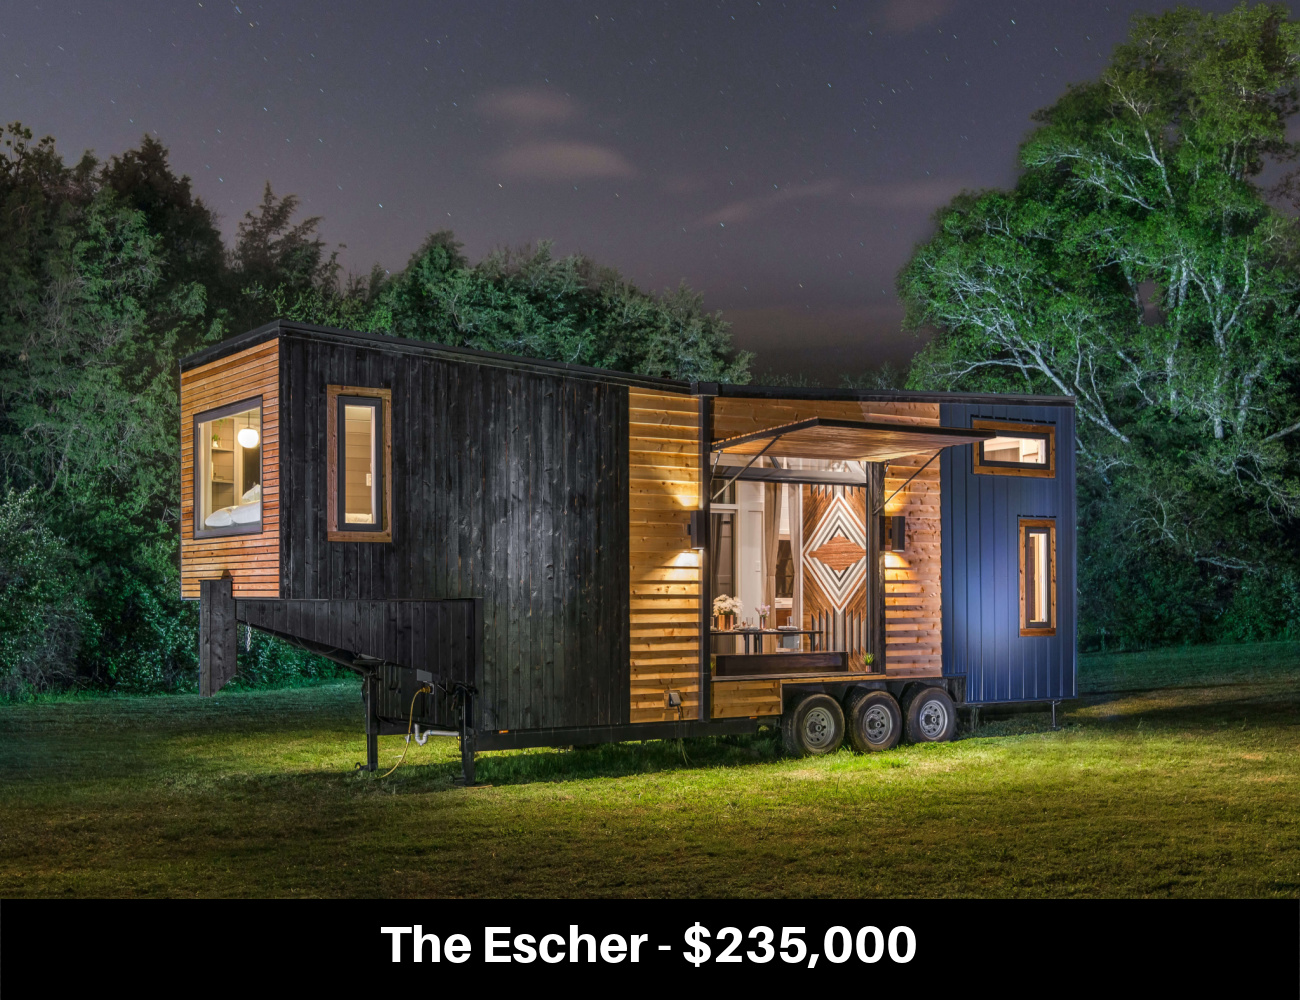 The Escher - $235,000